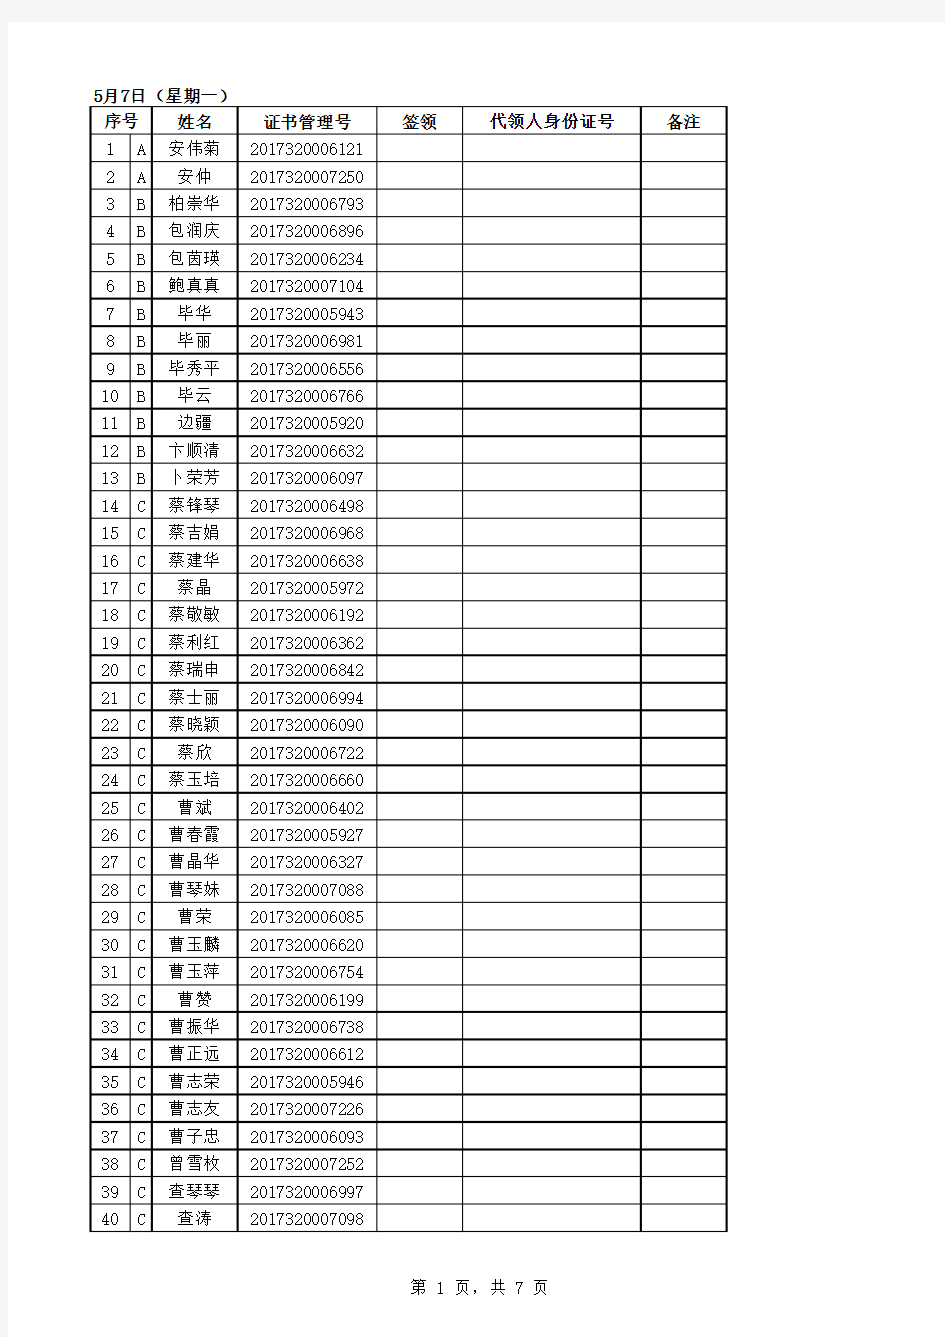 2017年度江苏省税务师职业资格考试全科考试合格人员名单